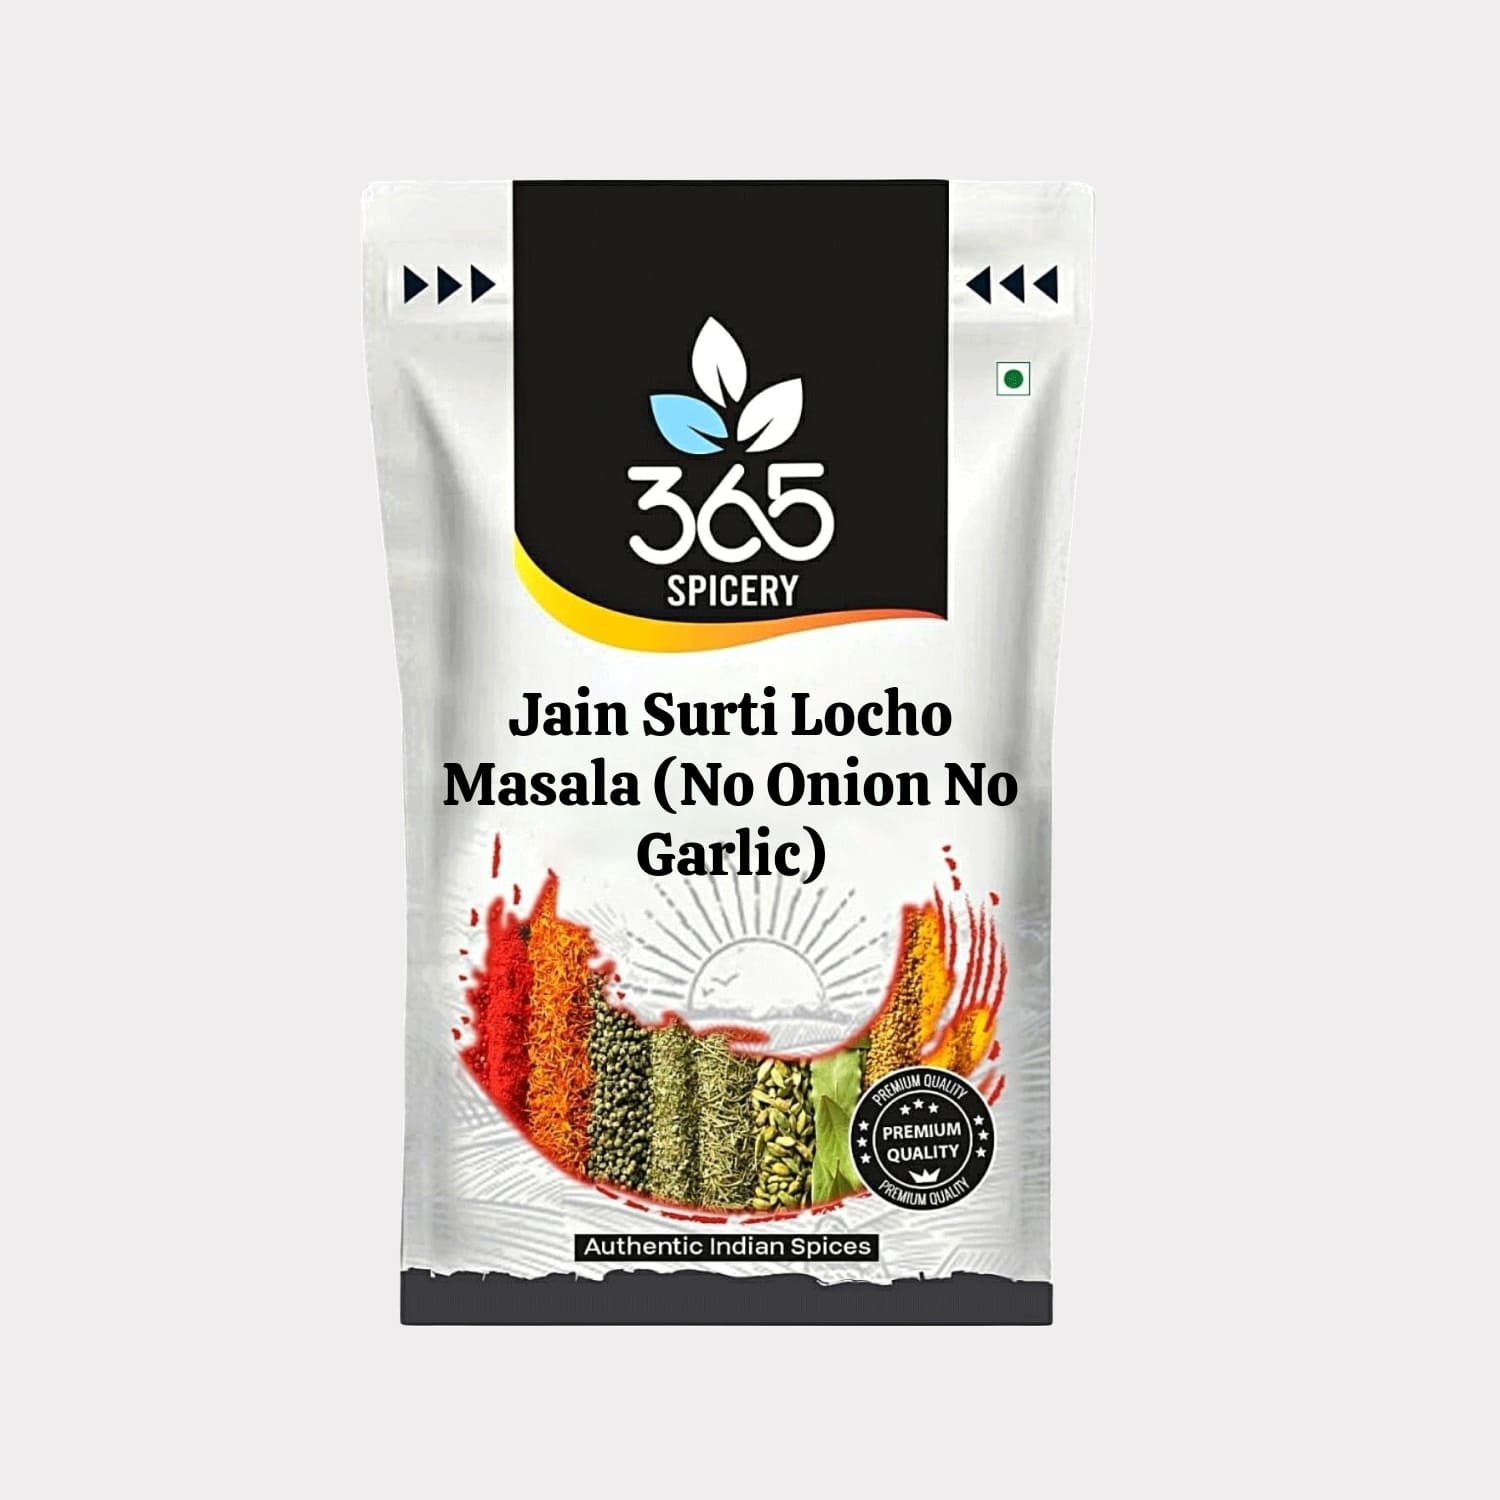 Jain Surti Locho Masala (No Onion No Garlic)